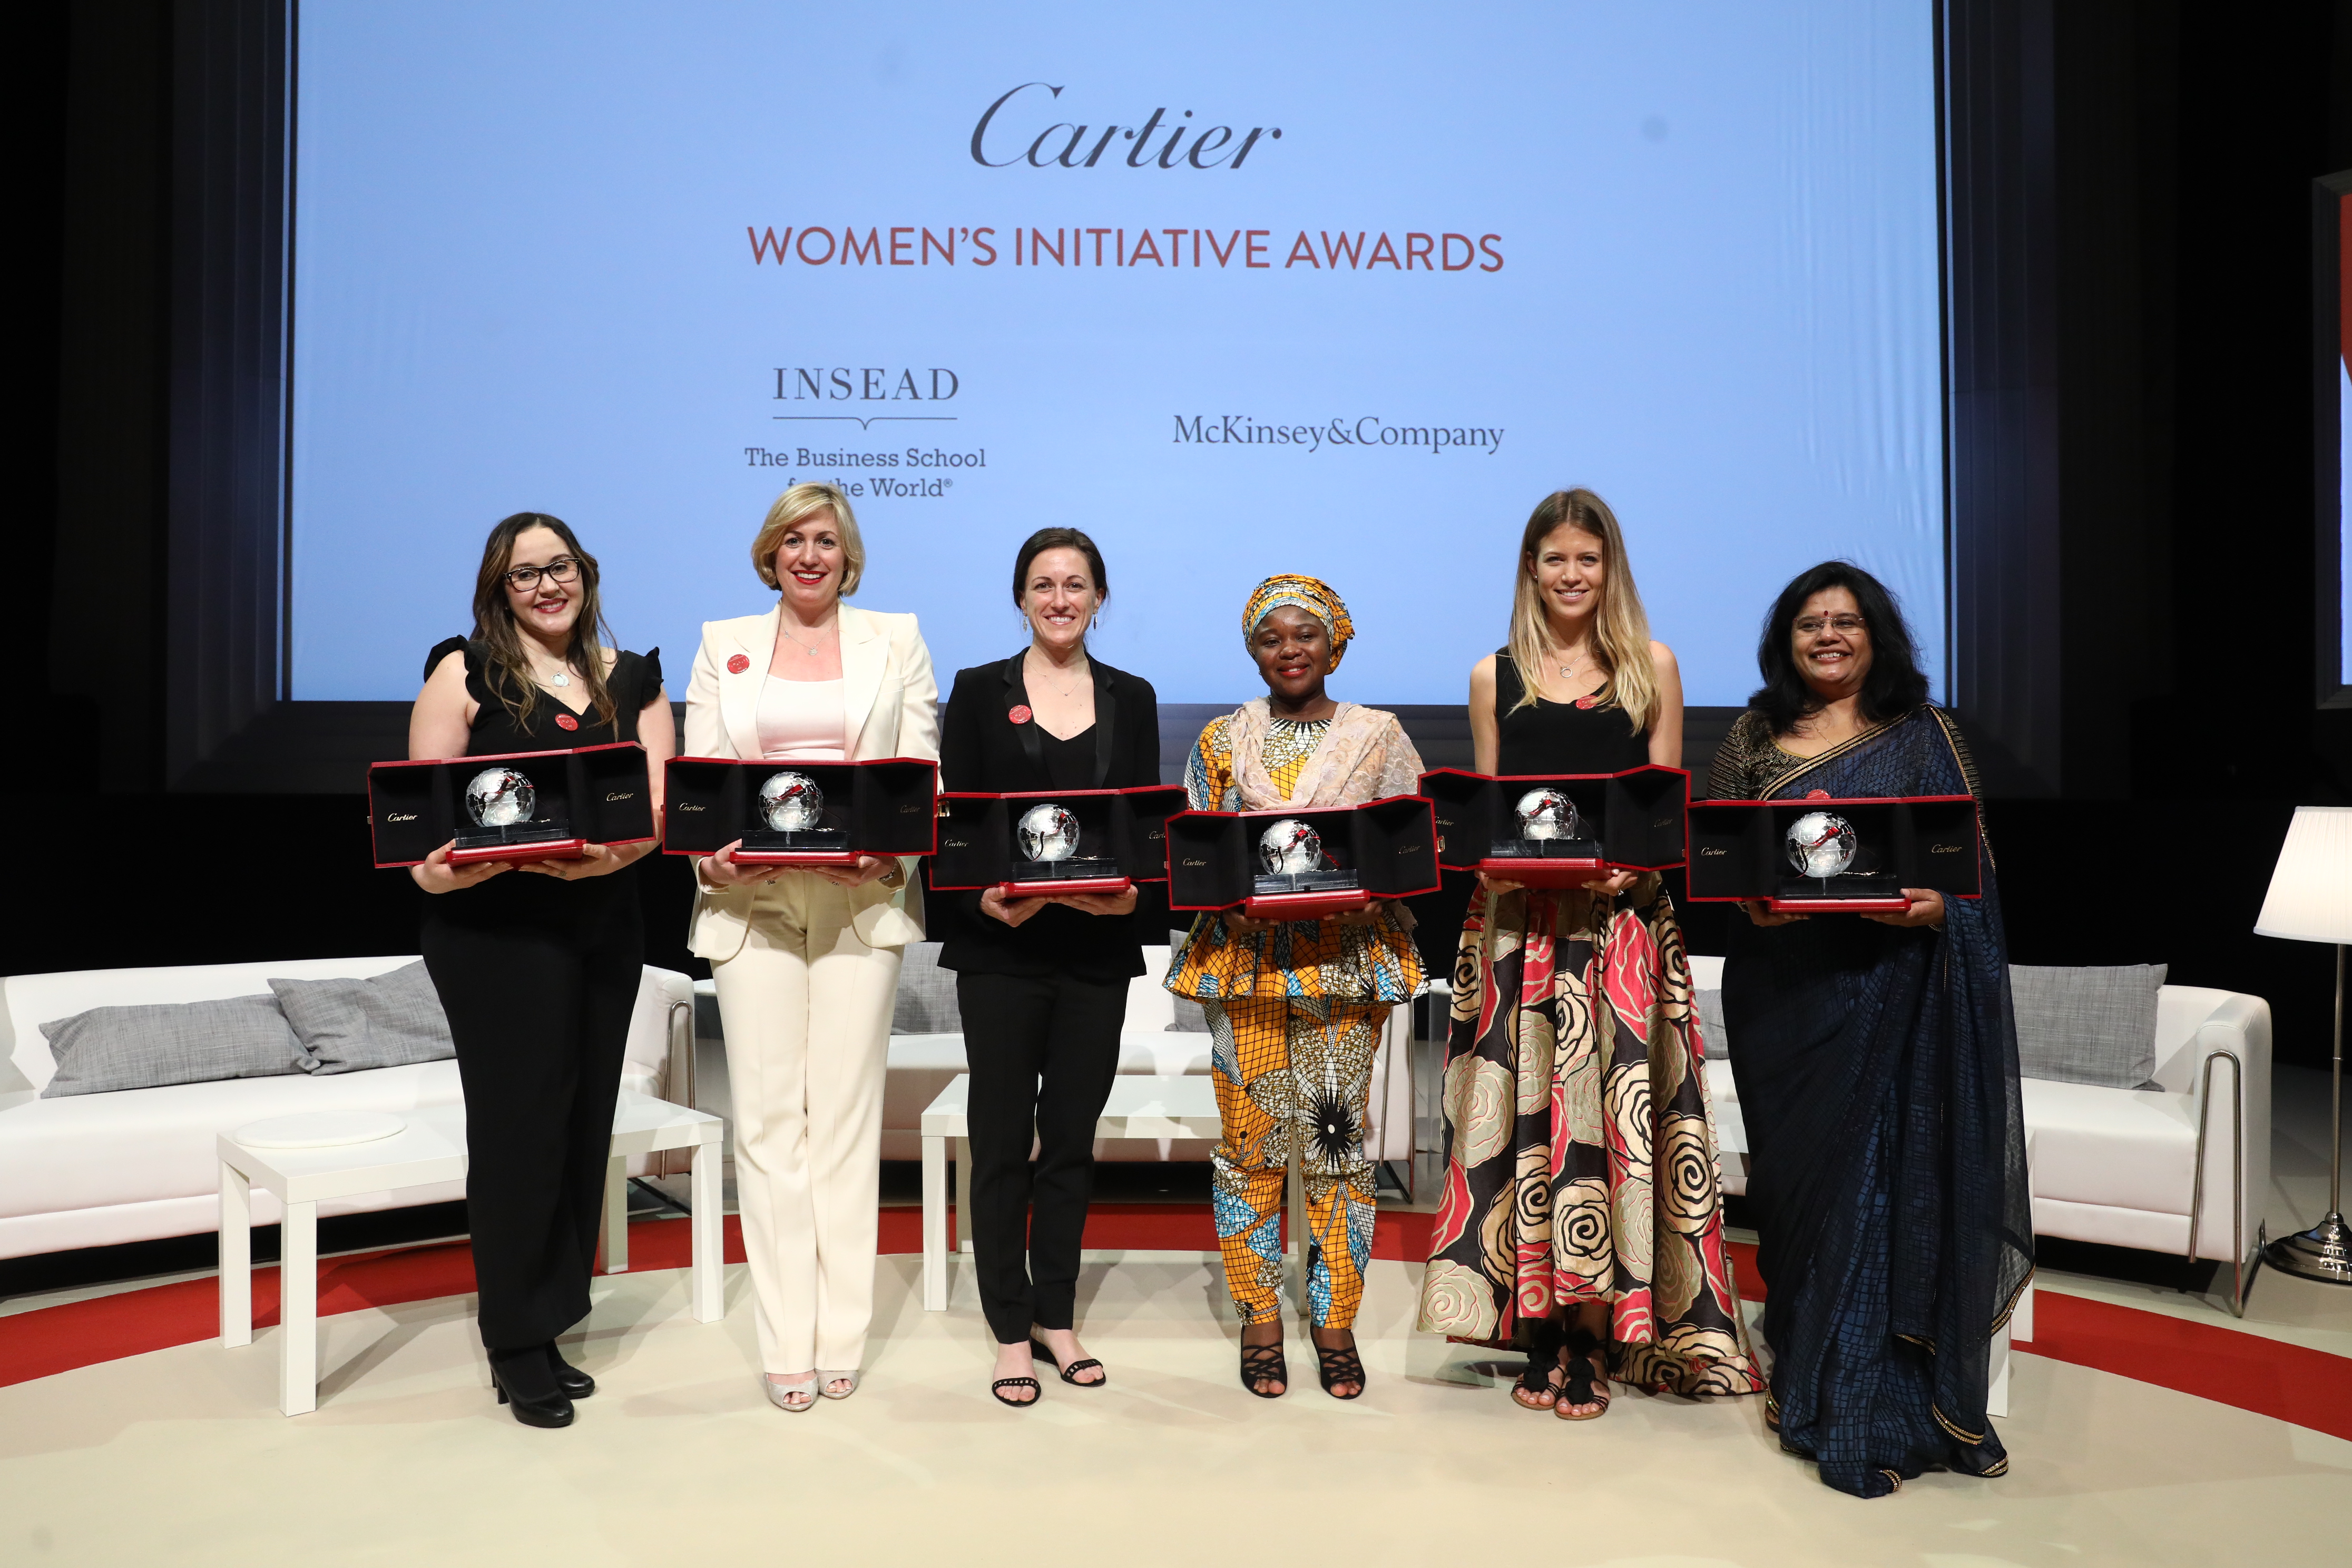 cartier women's award